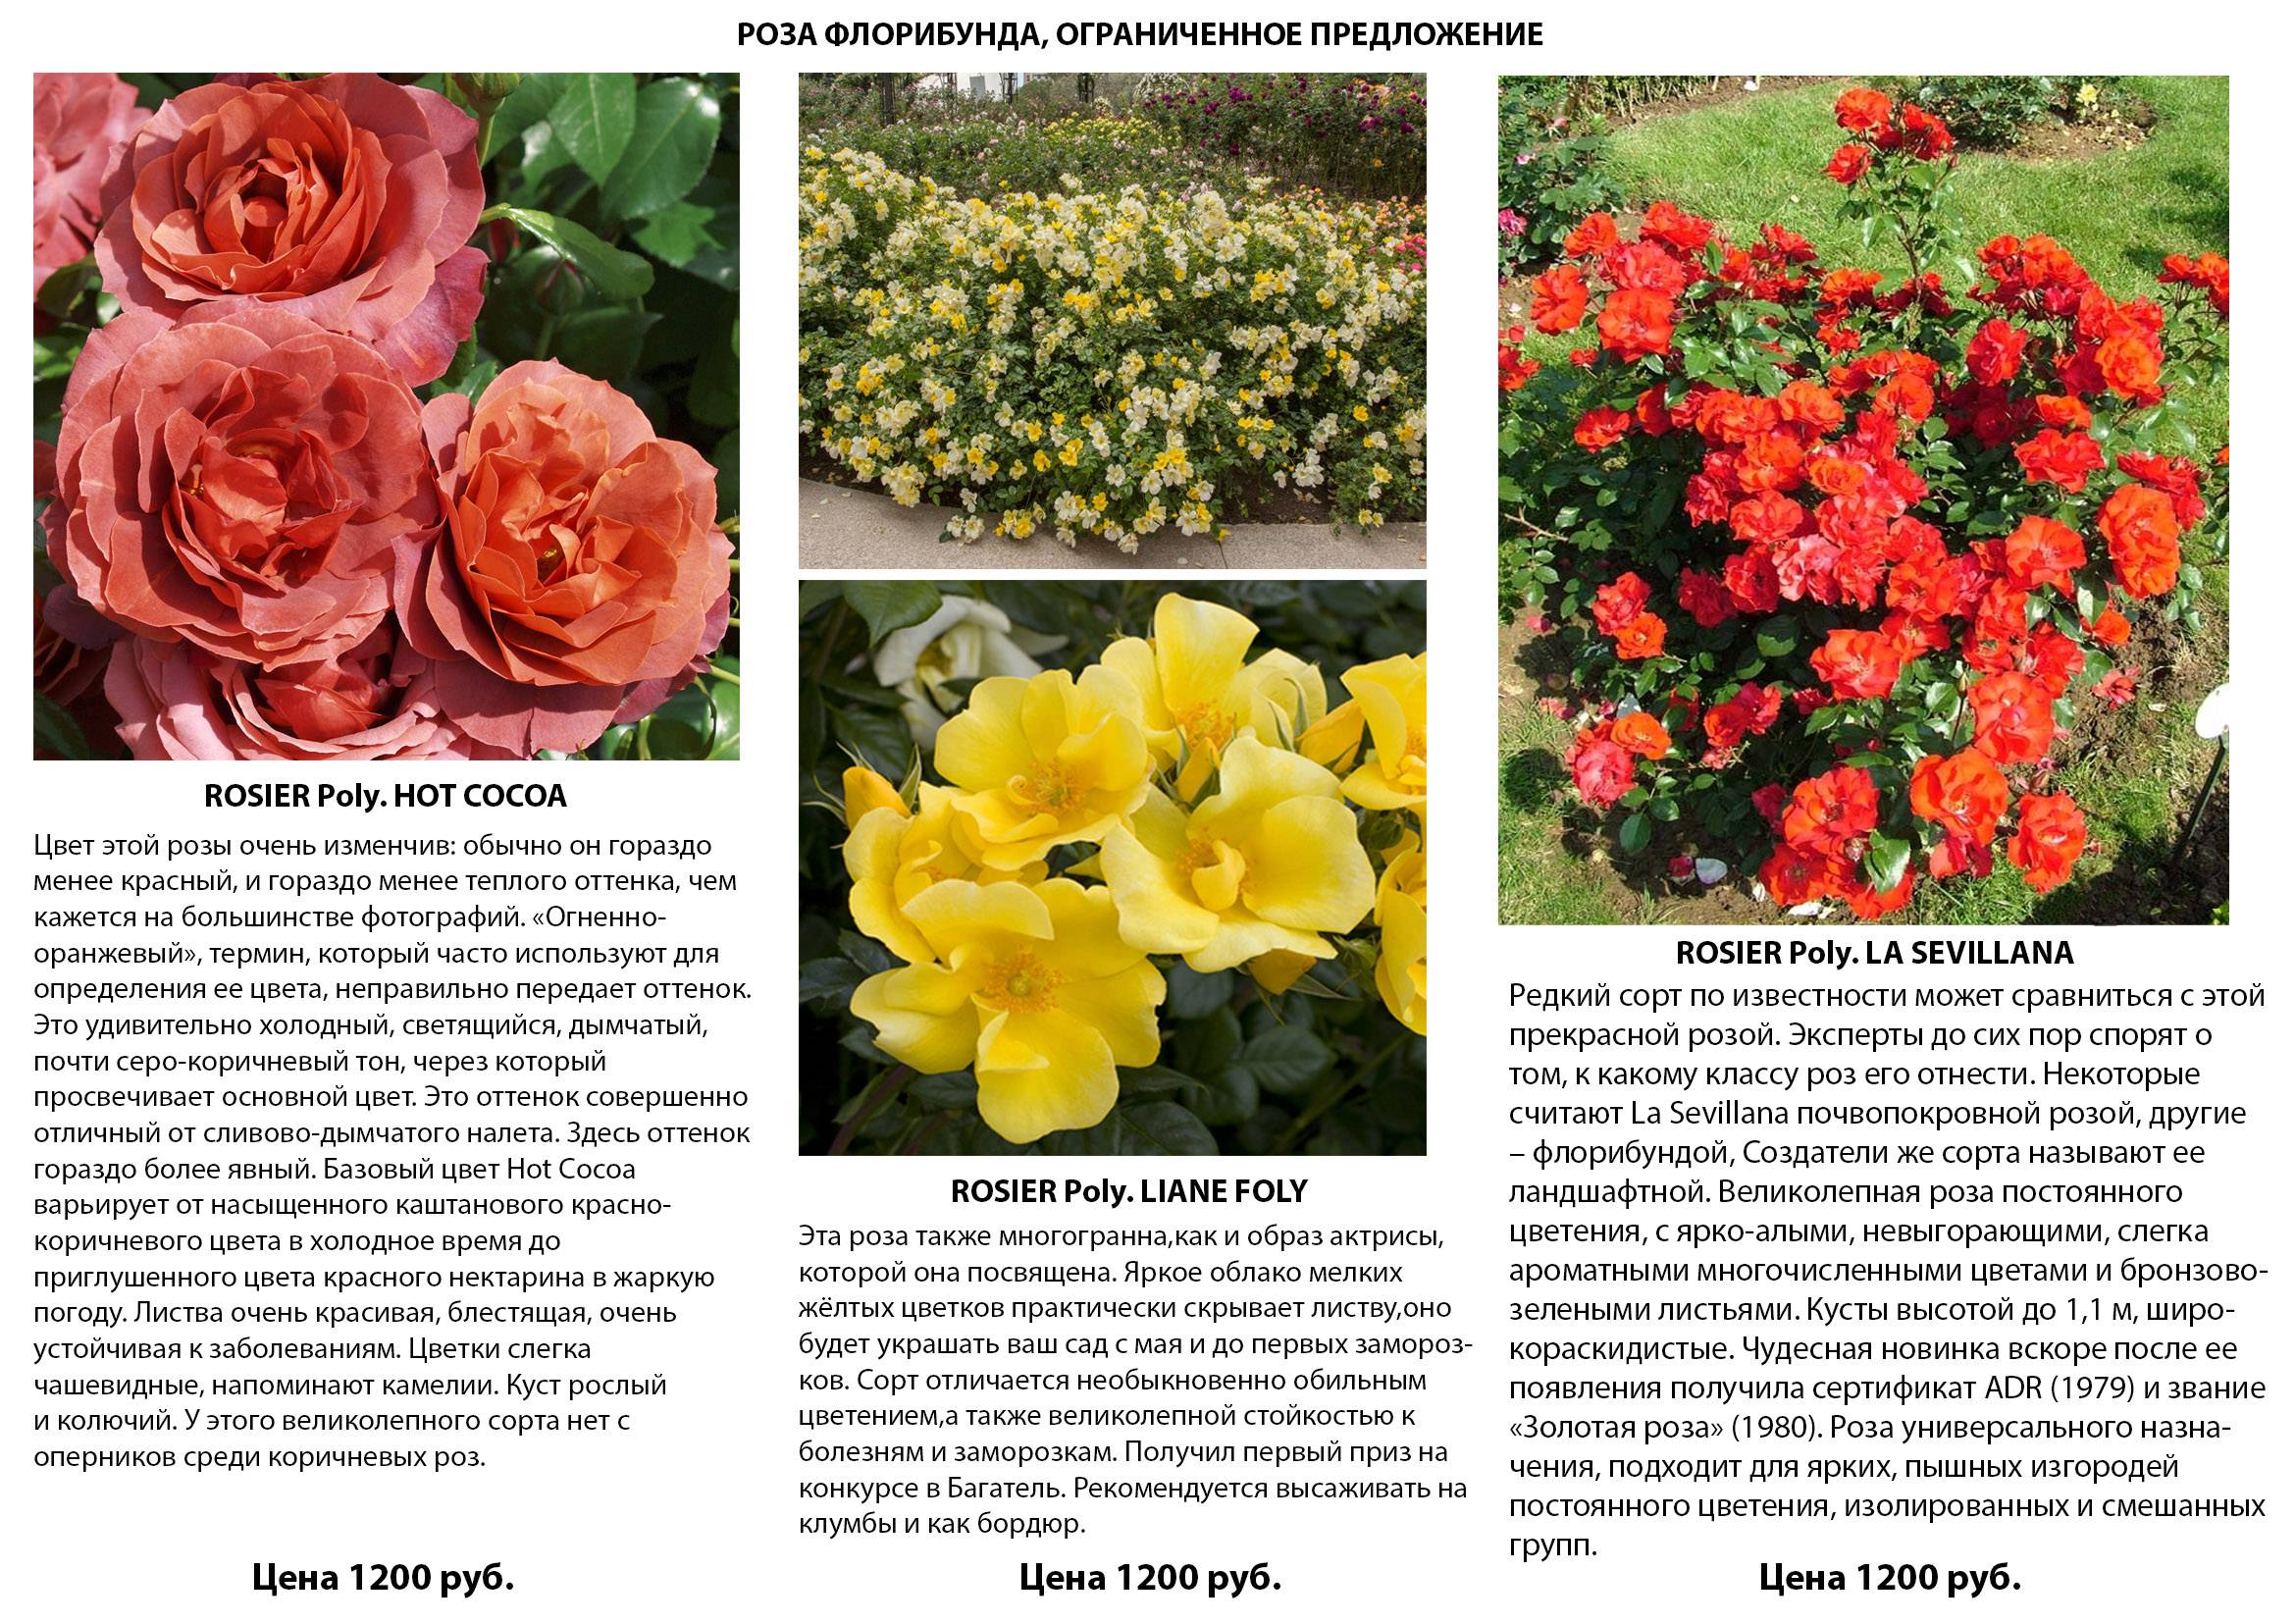 Роза абракадабра - характерные черты сорта и как выращивать в саду